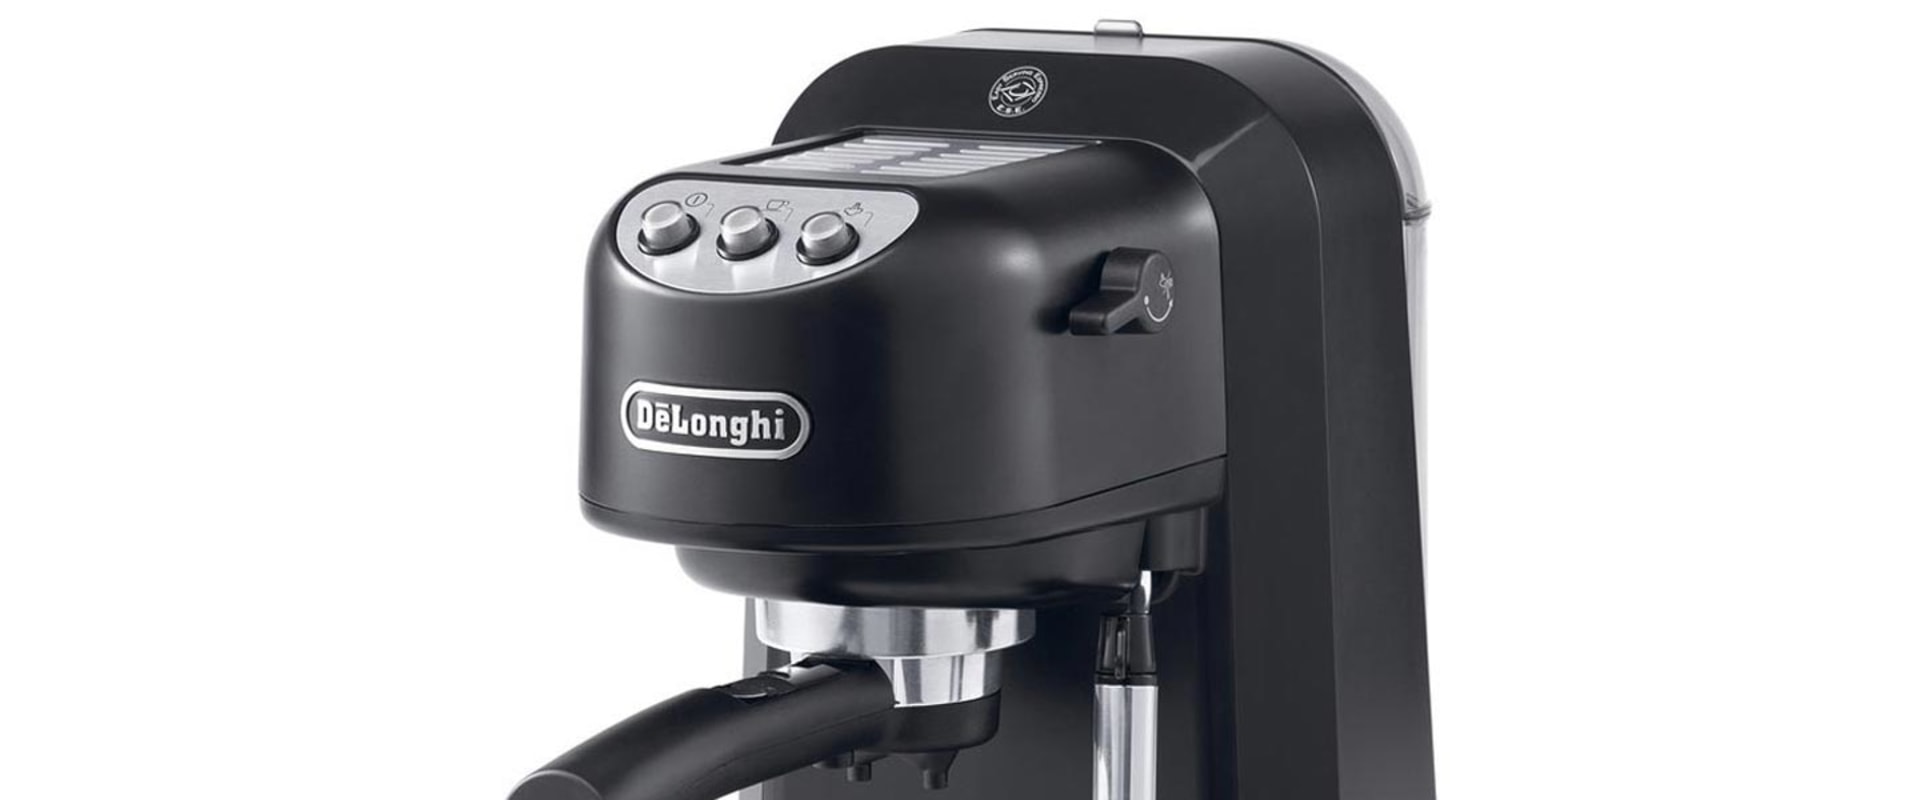 Waar wordt de delonghi espressomachine gemaakt?